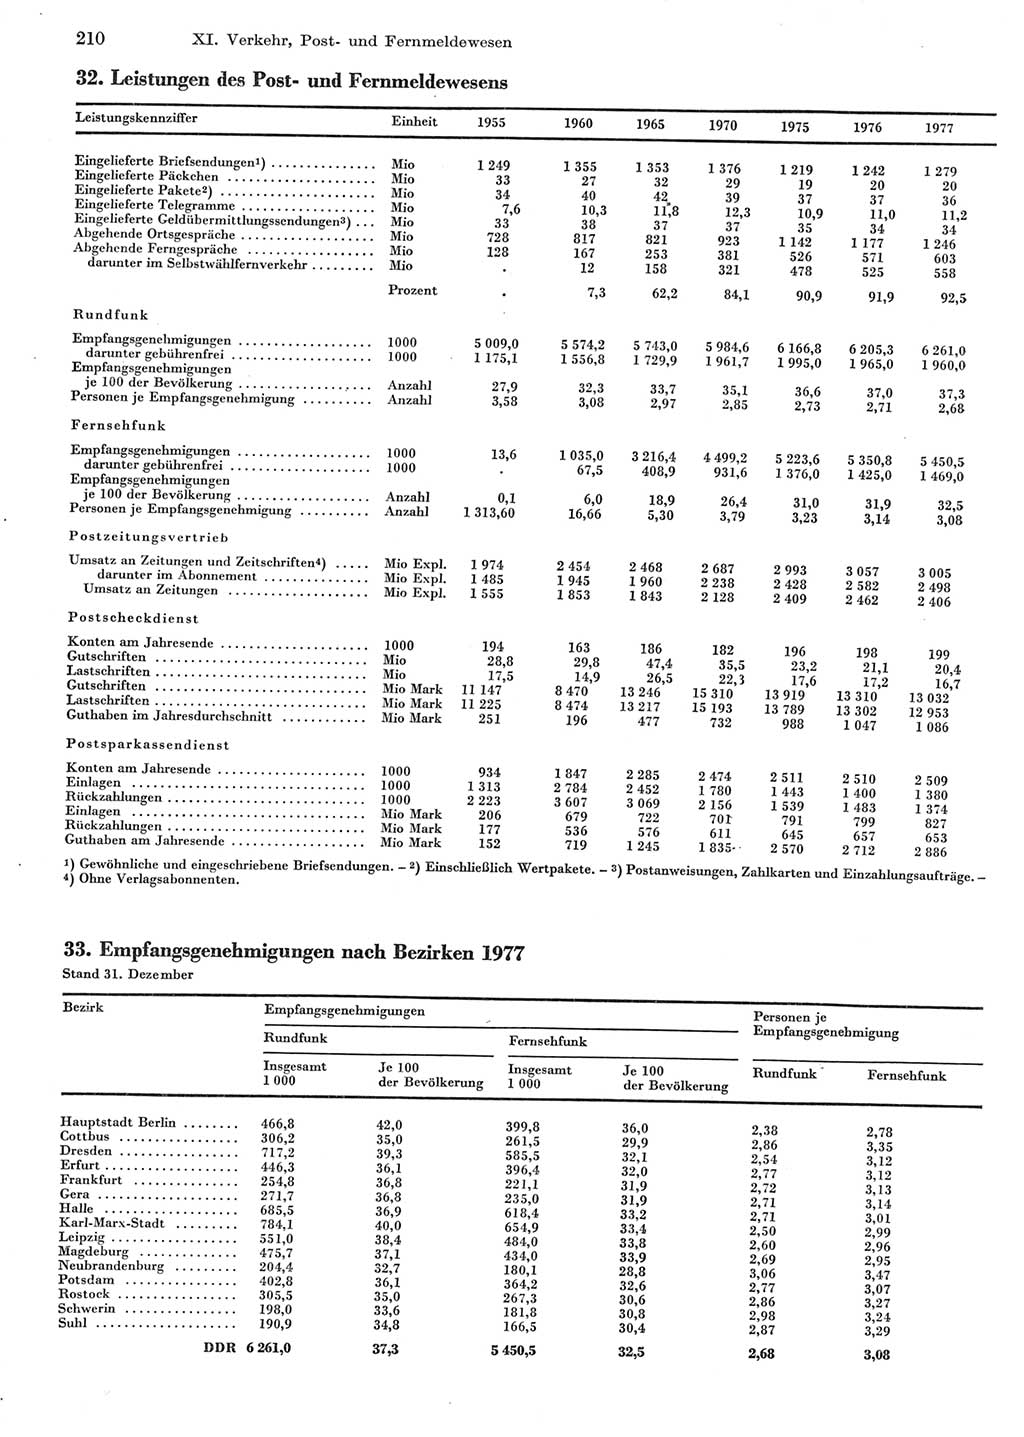 Statistisches Jahrbuch der Deutschen Demokratischen Republik (DDR) 1978, Seite 210 (Stat. Jb. DDR 1978, S. 210)